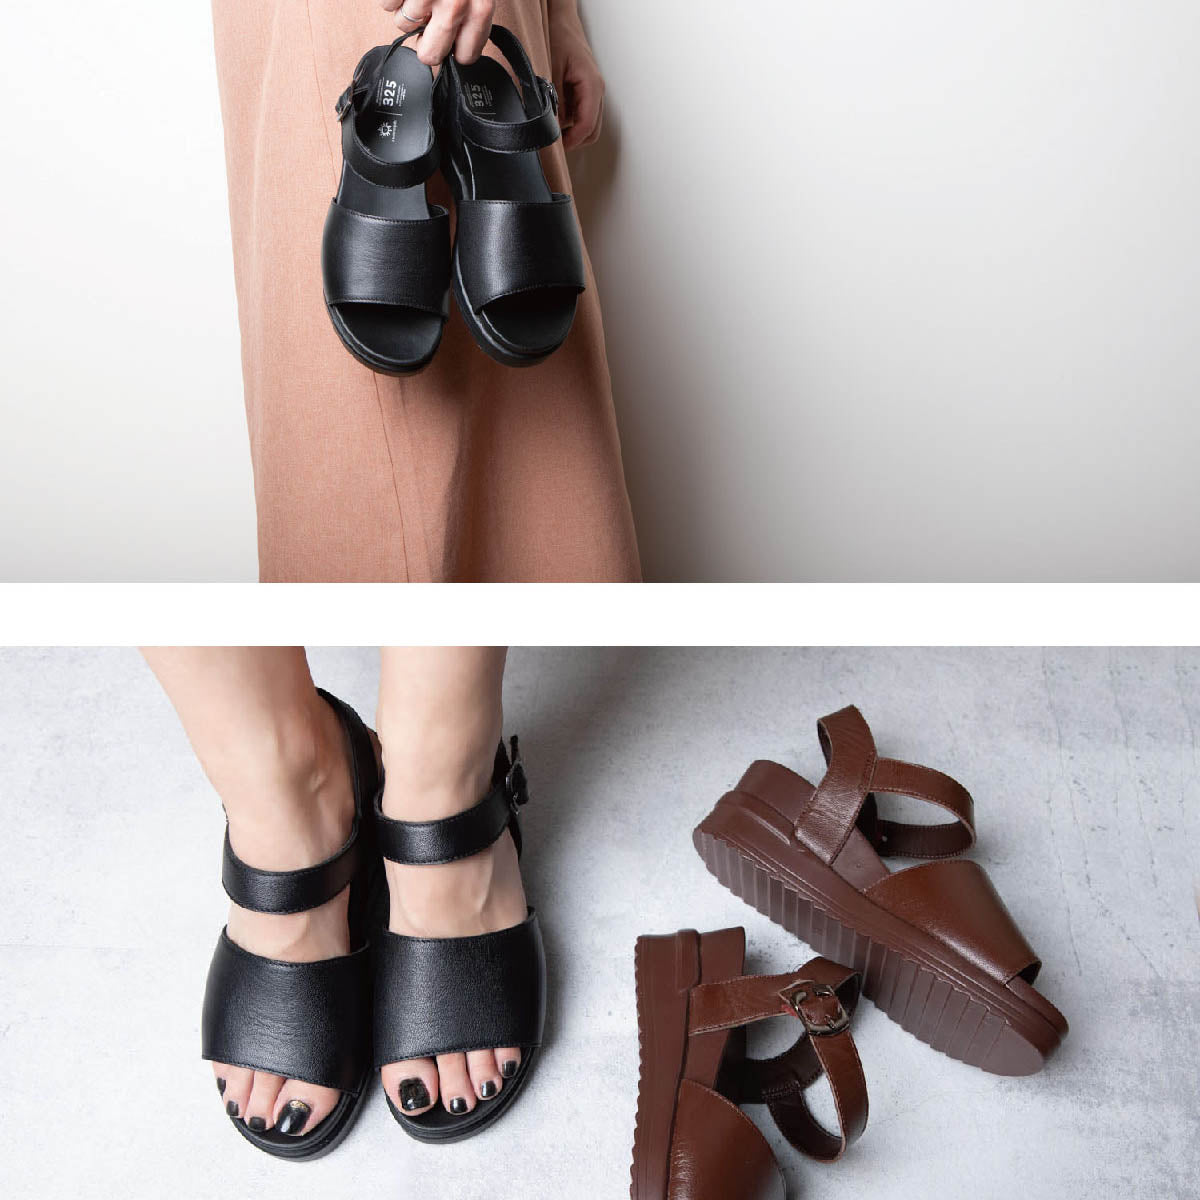 Leather sandals voluminous soles